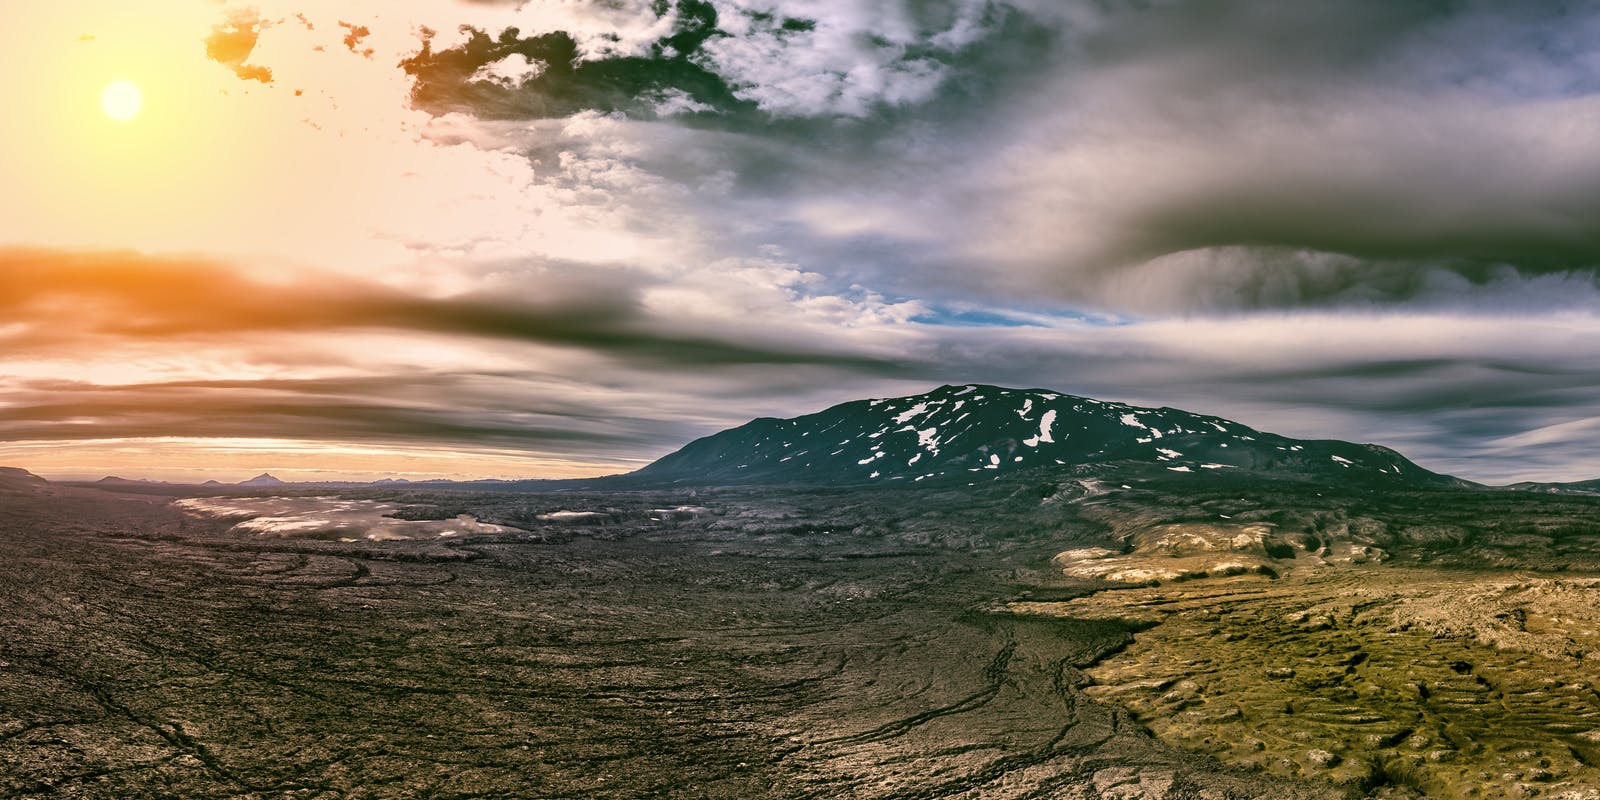 Hekla volcano